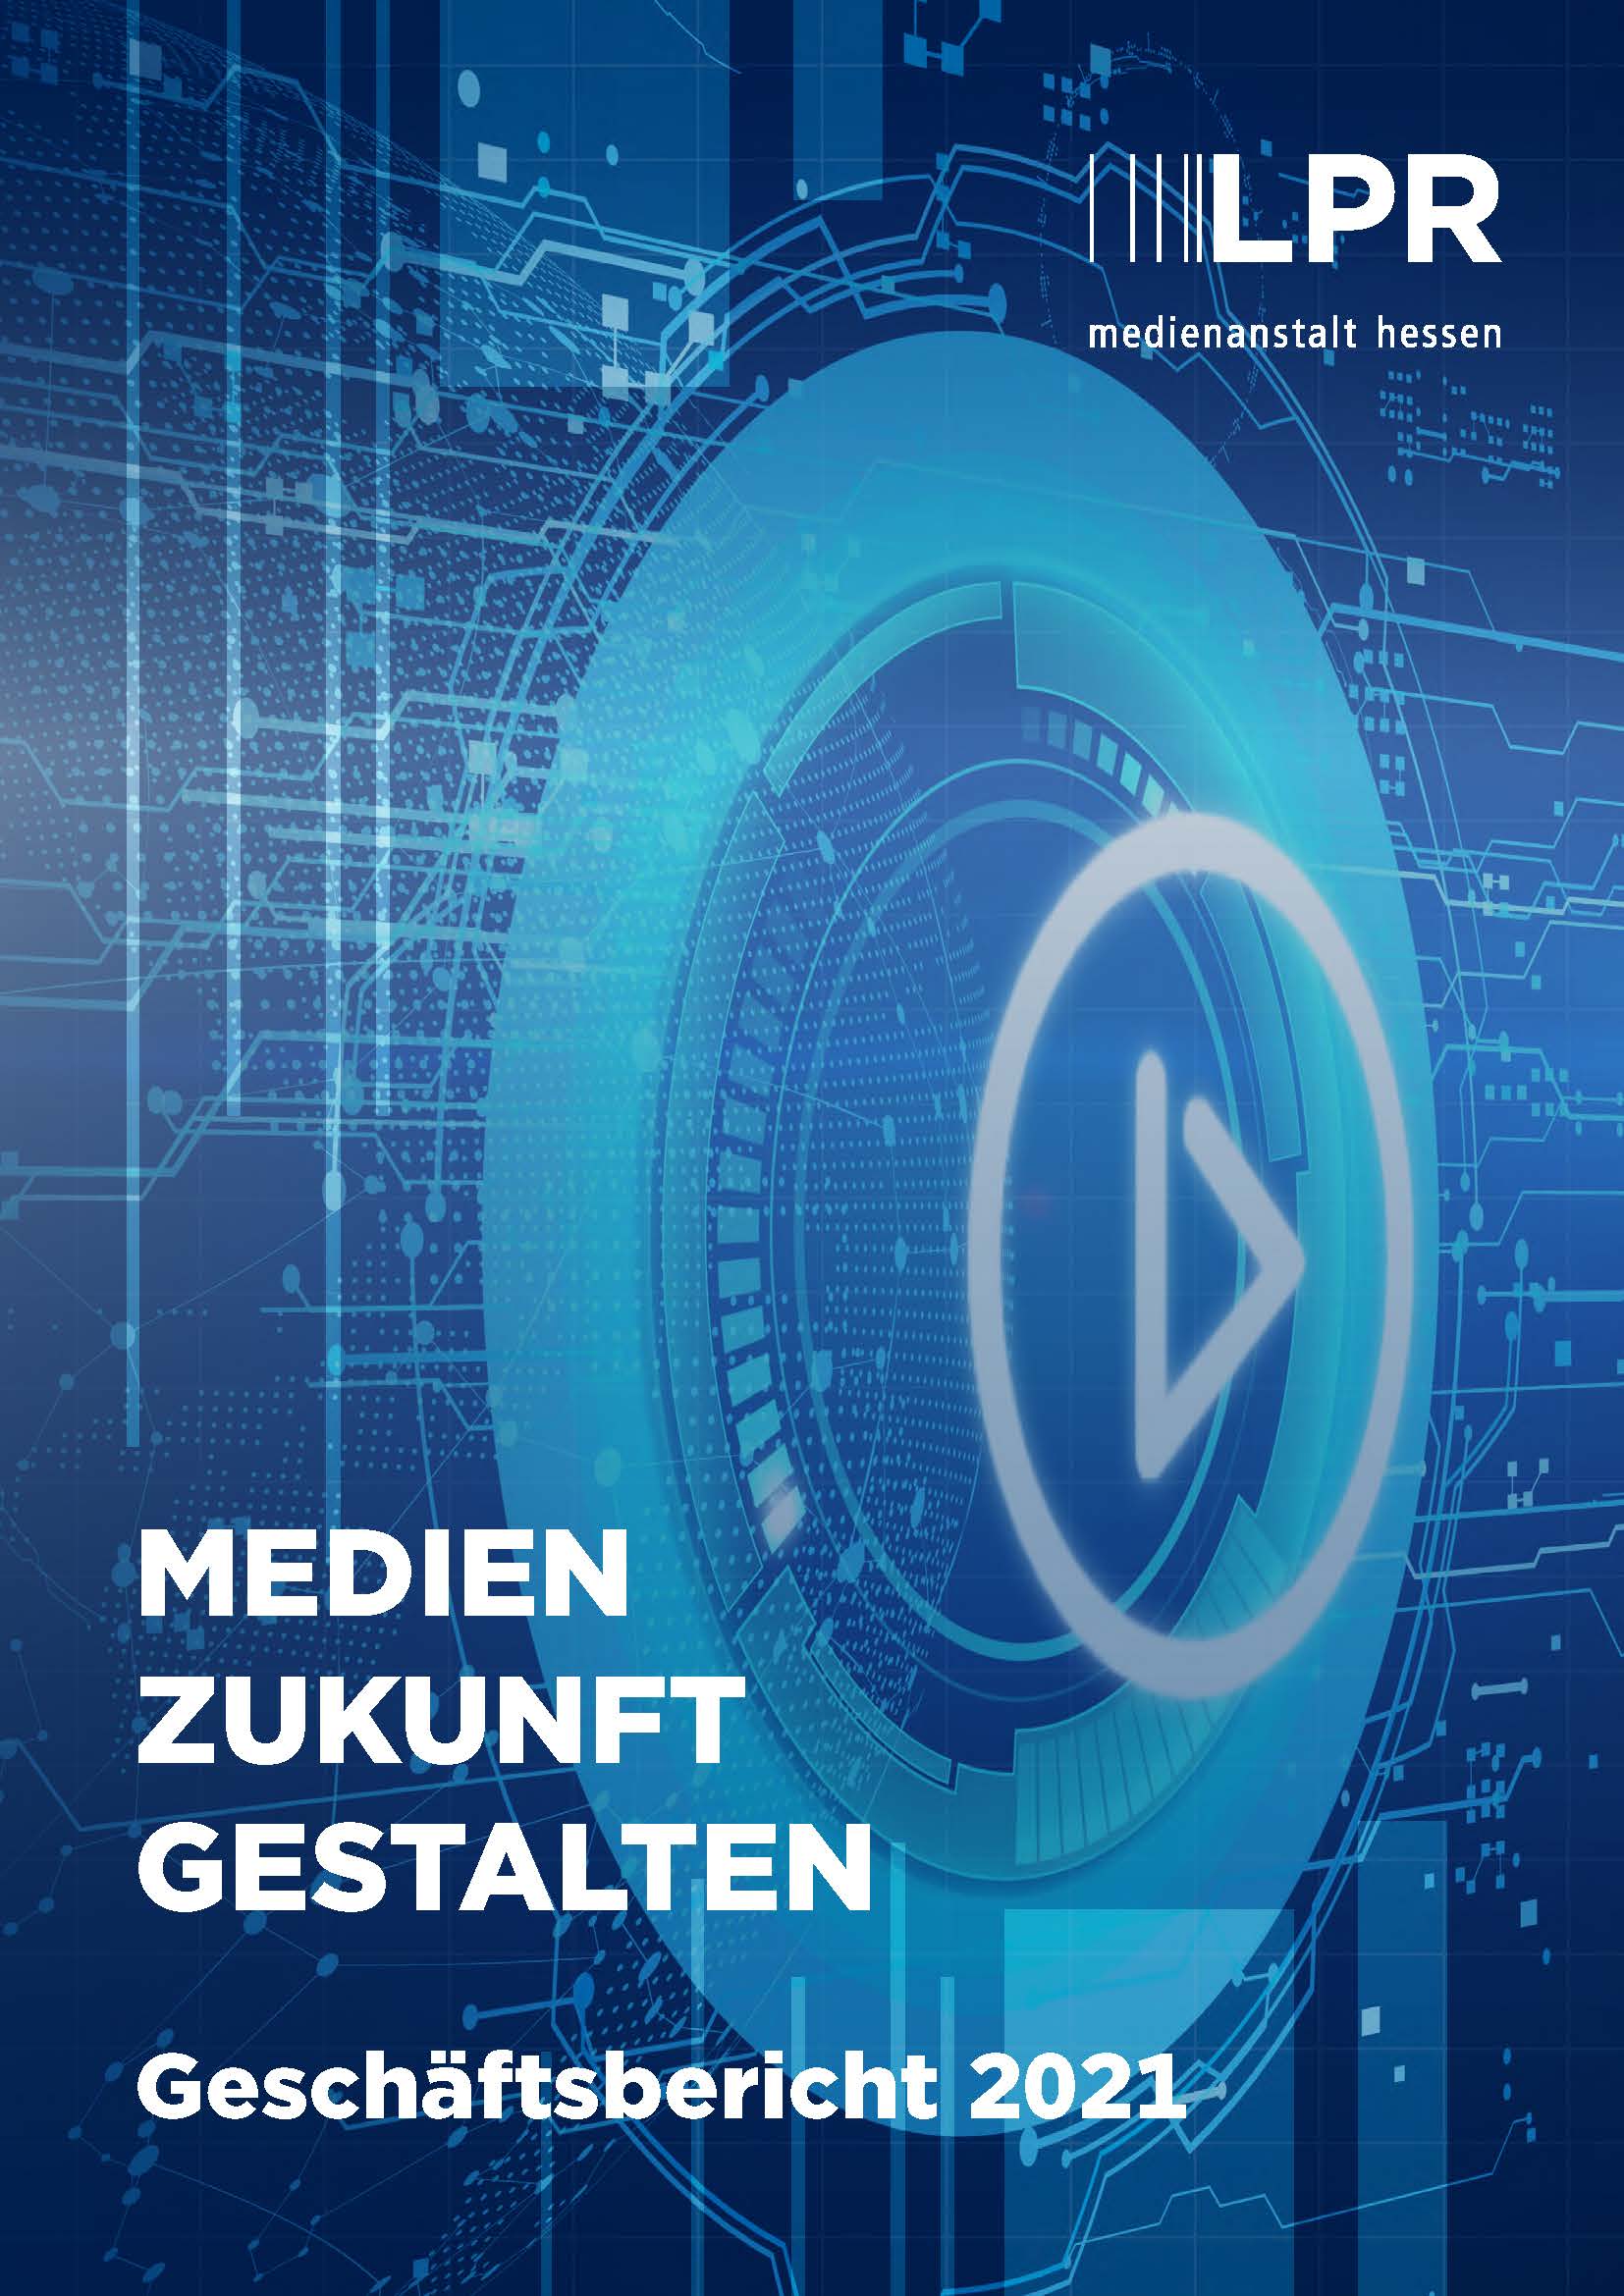 Medien Zukunft Gestalten - Geschäftsbericht 2021